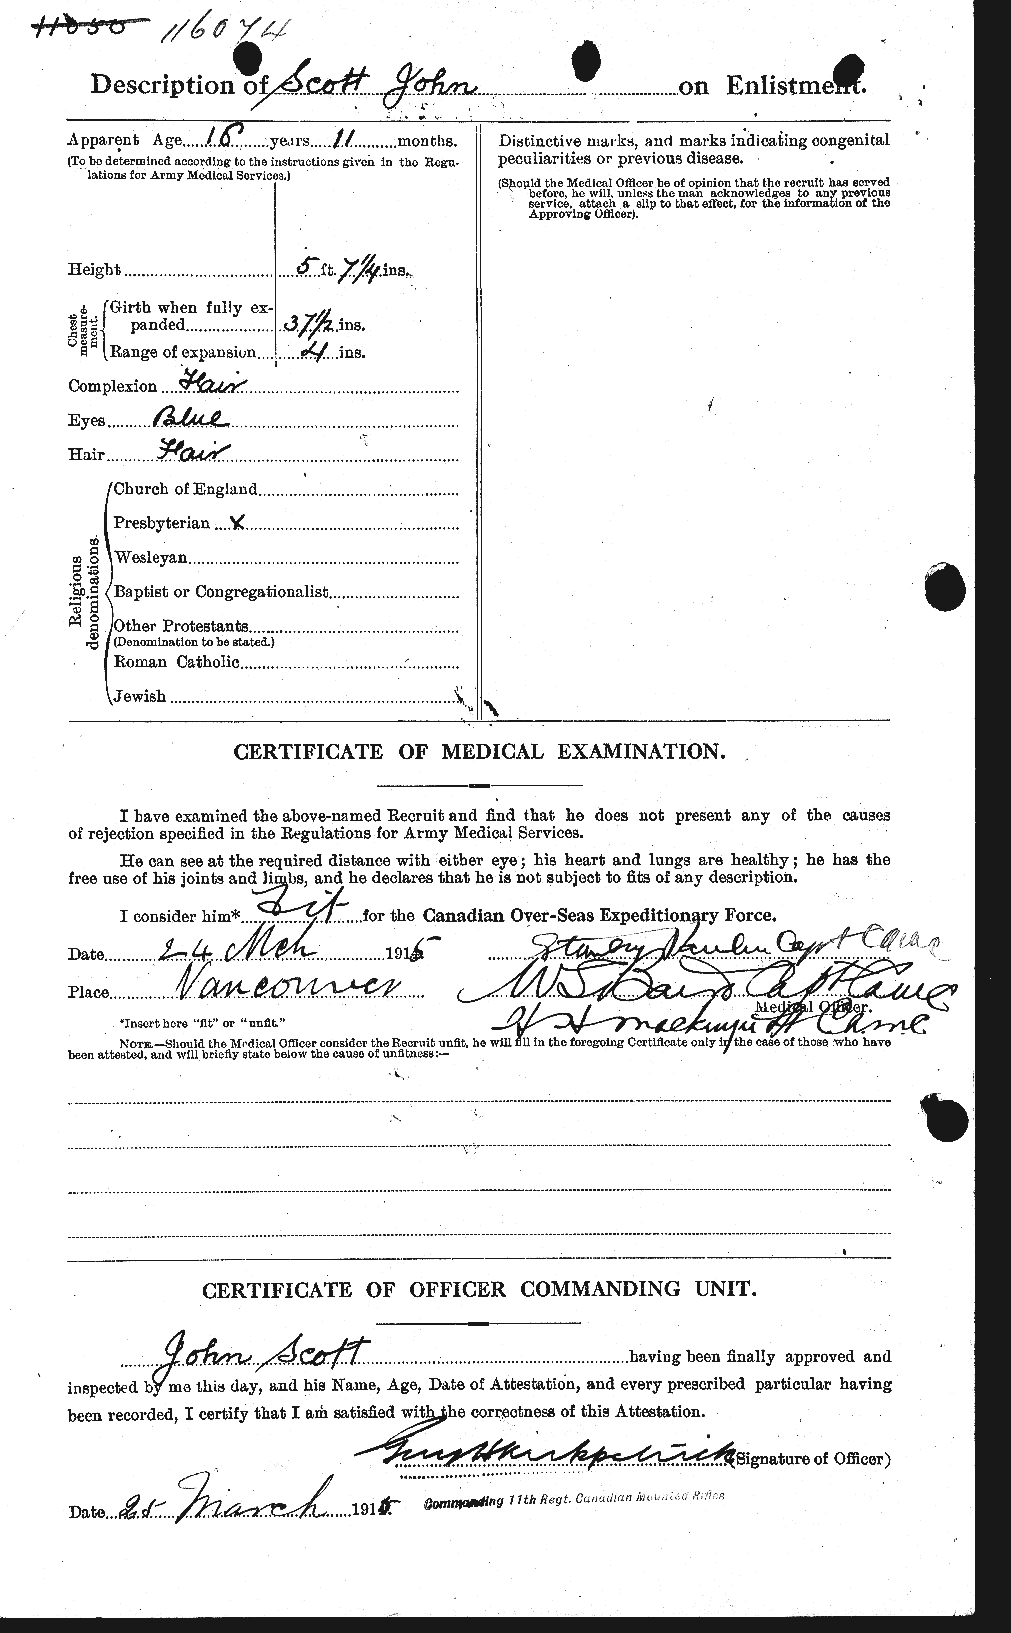 Dossiers du Personnel de la Première Guerre mondiale - CEC 084925b